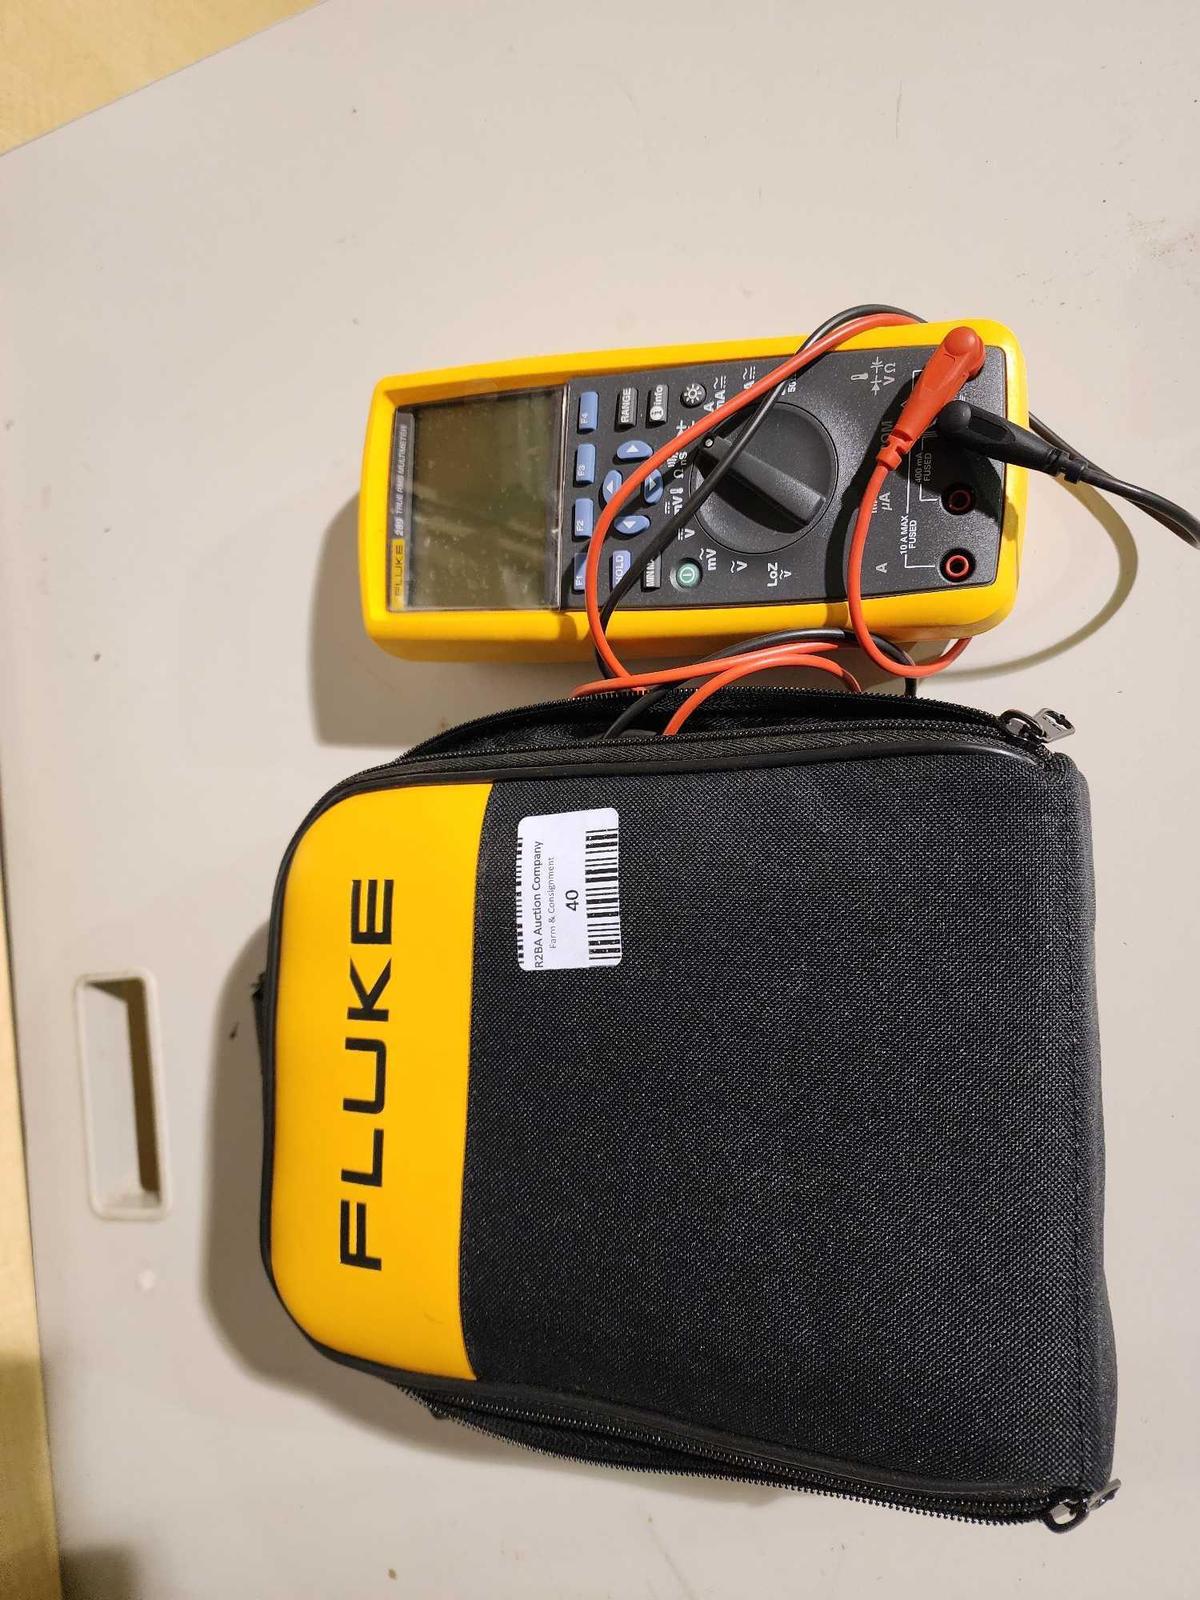 FLUKE voltage meter in nylon case. Like new.